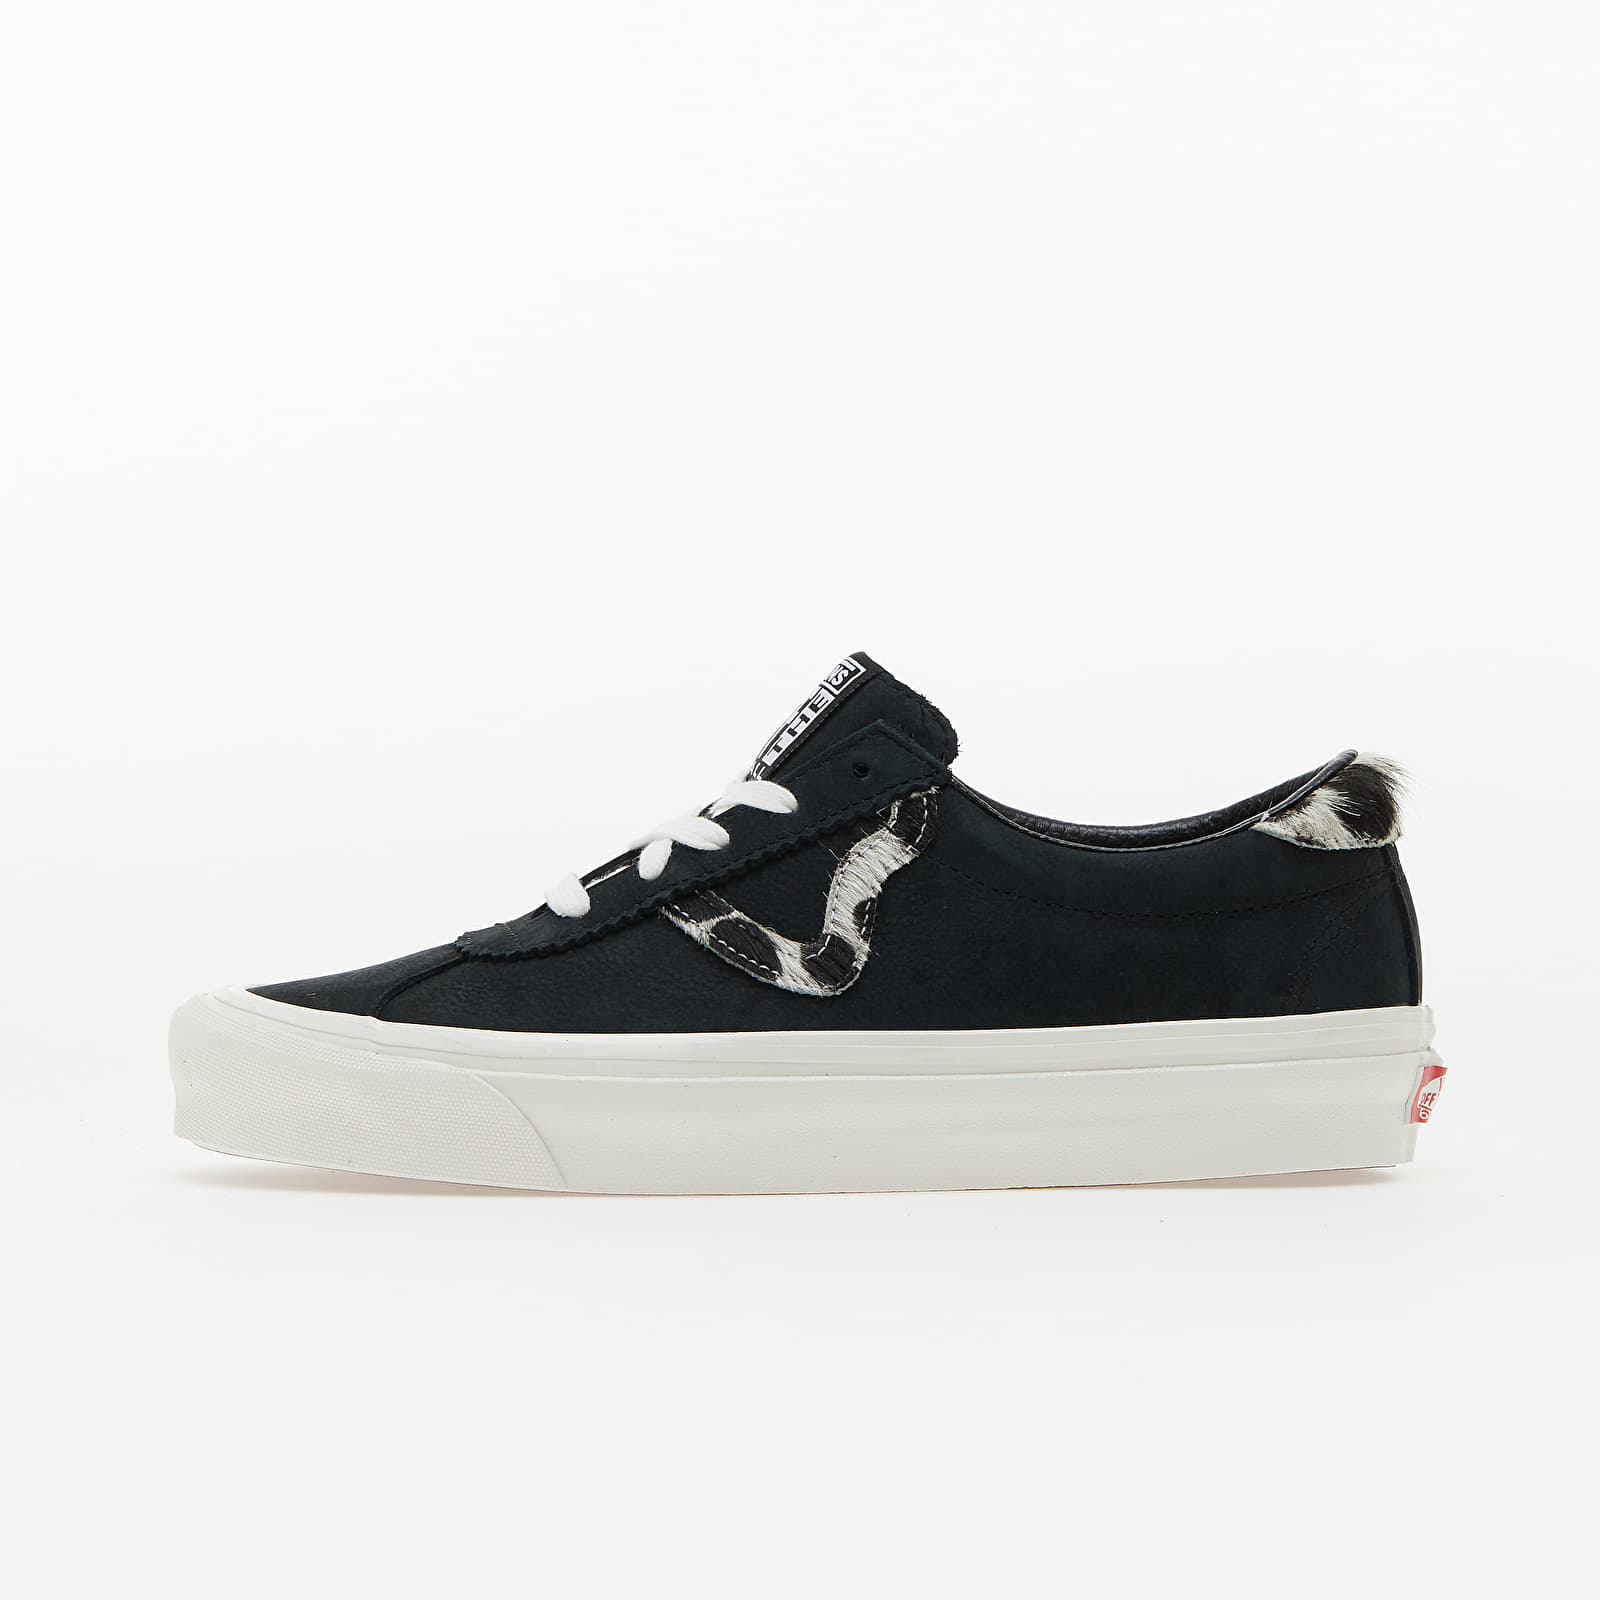 Men's shoes Vans Style 73 DX (Anaheim Factory) Black/ Dalmatian